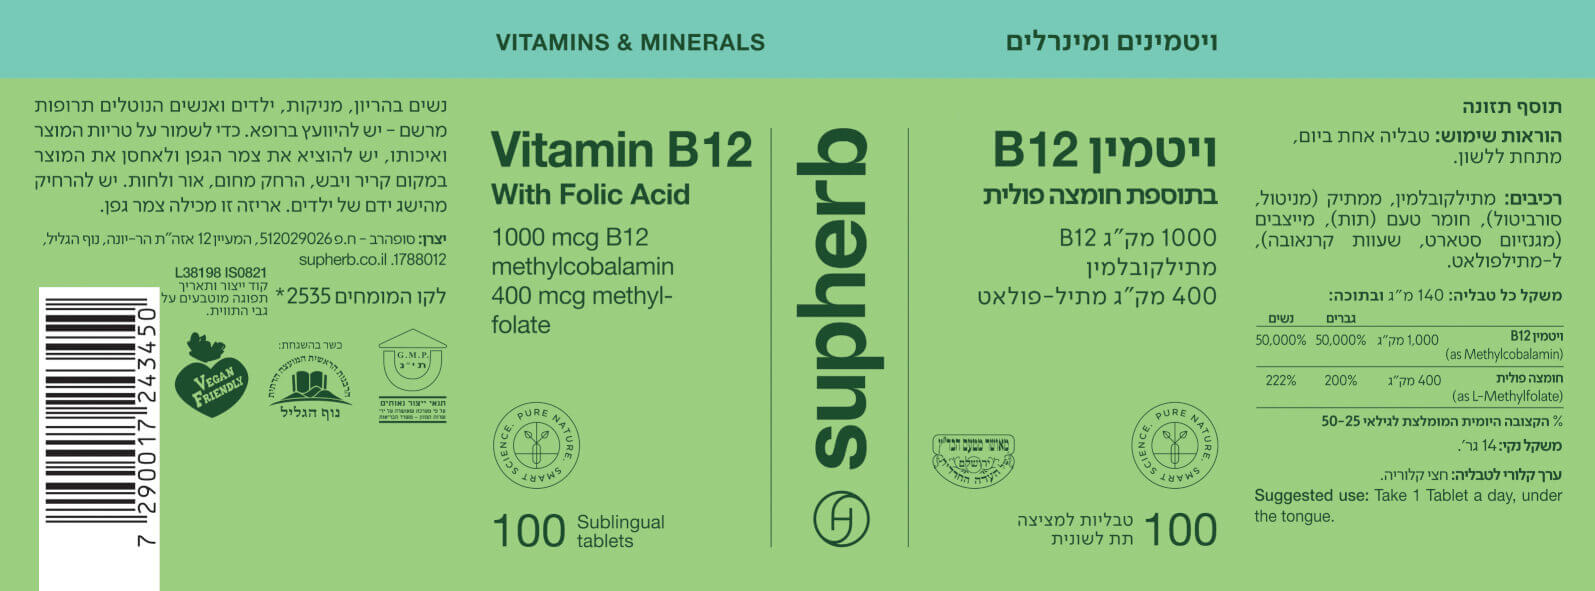 ויטמין B12 - תוית - סופרהרב